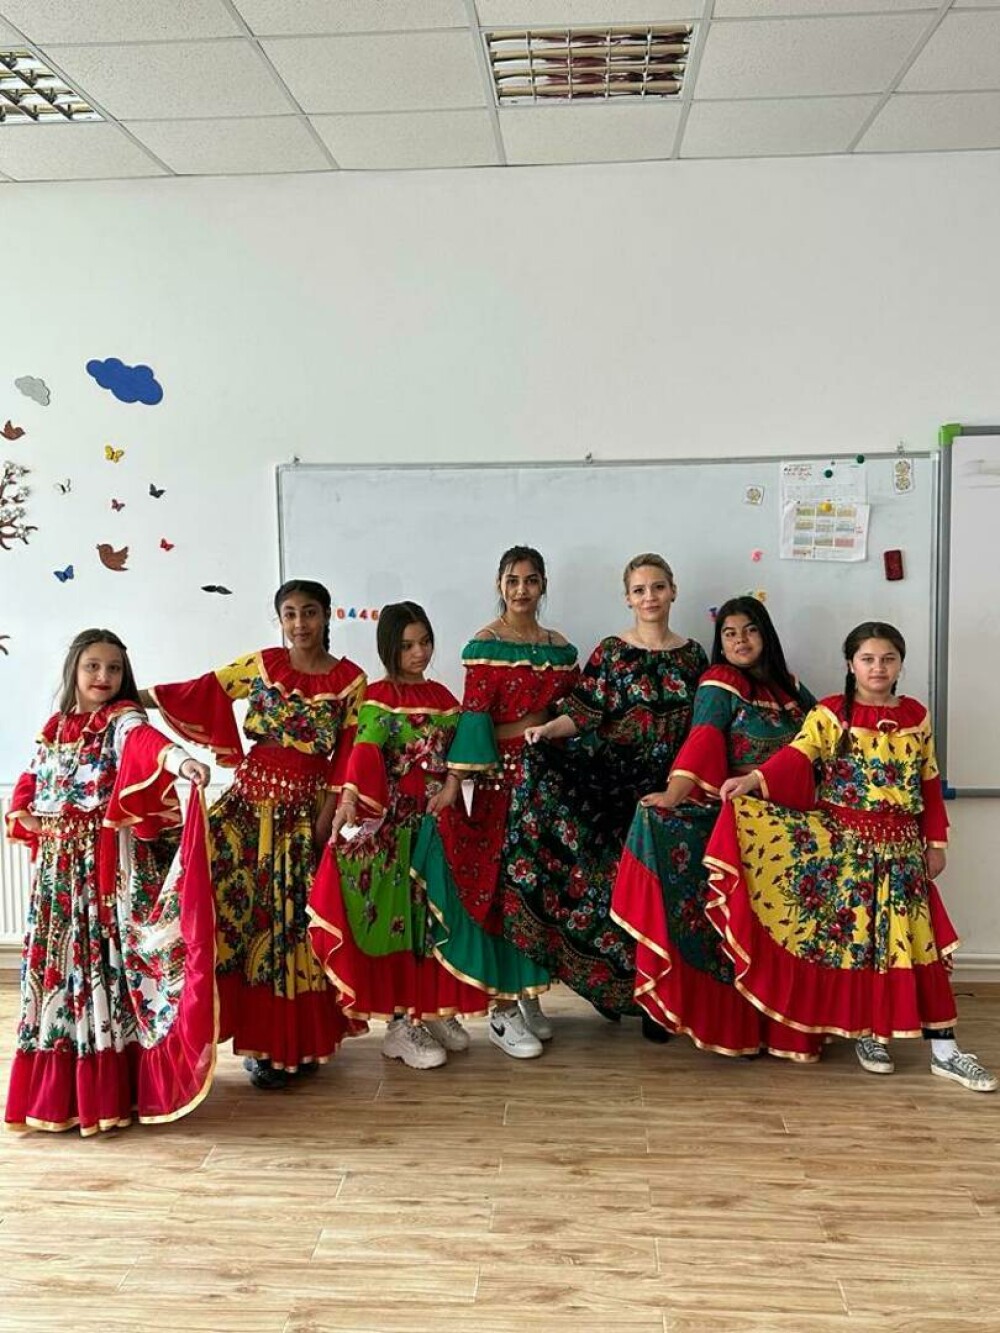 Școala din Buzău care luptă să ofere o oază de educație și speranță într-o comunitate afectată de abandonul școlar - Imaginea 8